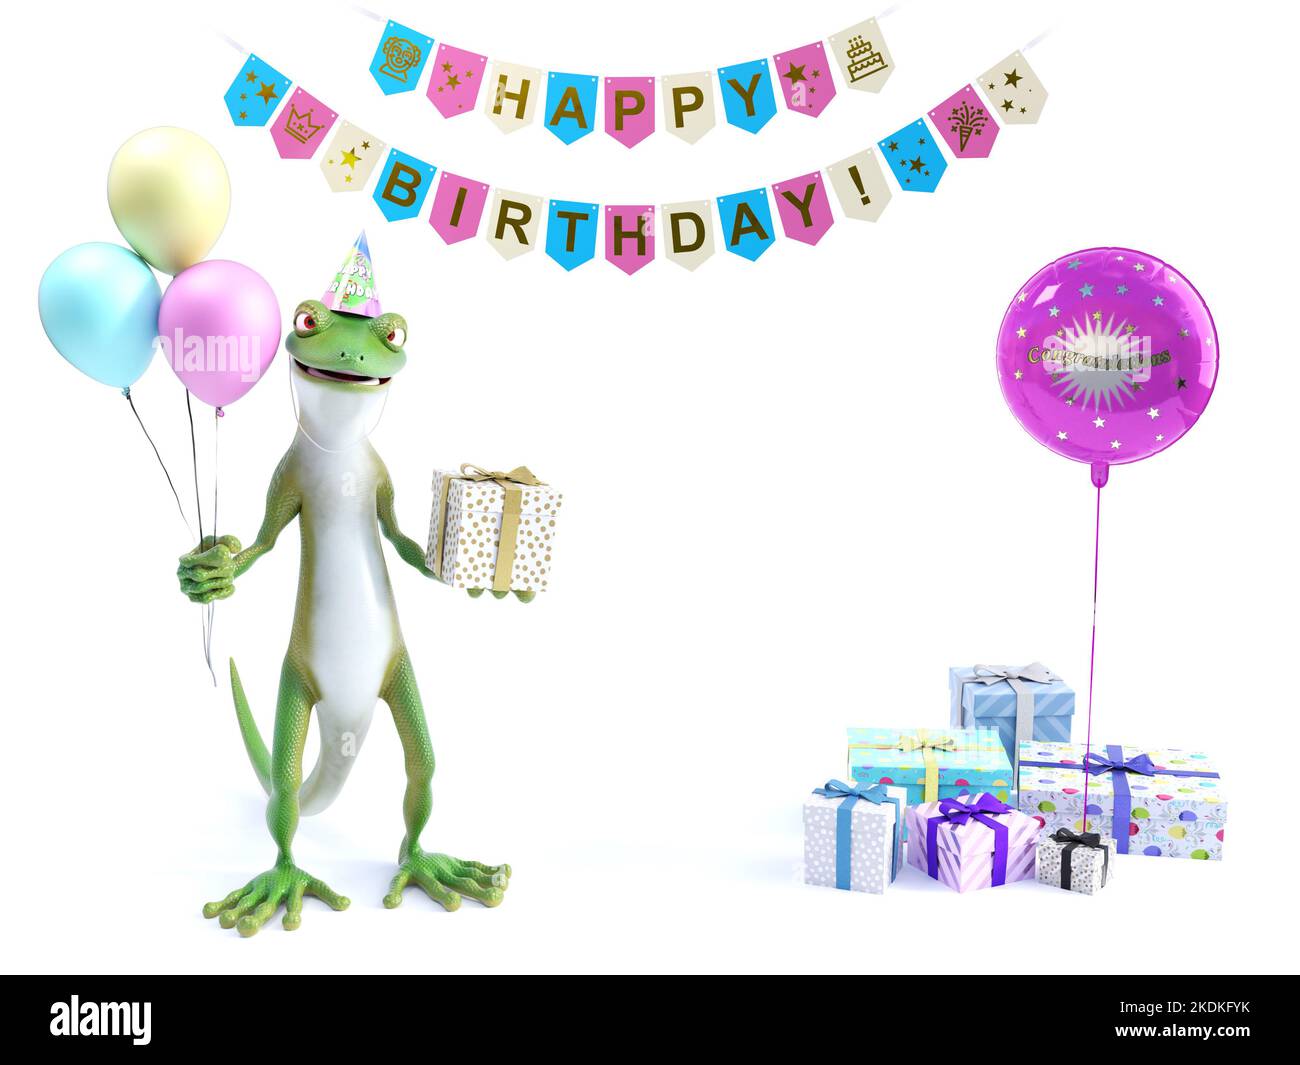 3D rendu d'un gecko ou d'un lézard vert frais tenant trois ballons d'une main et un cadeau enveloppé de l'autre célébrant une fête d'anniversaire heureuse. Banque D'Images